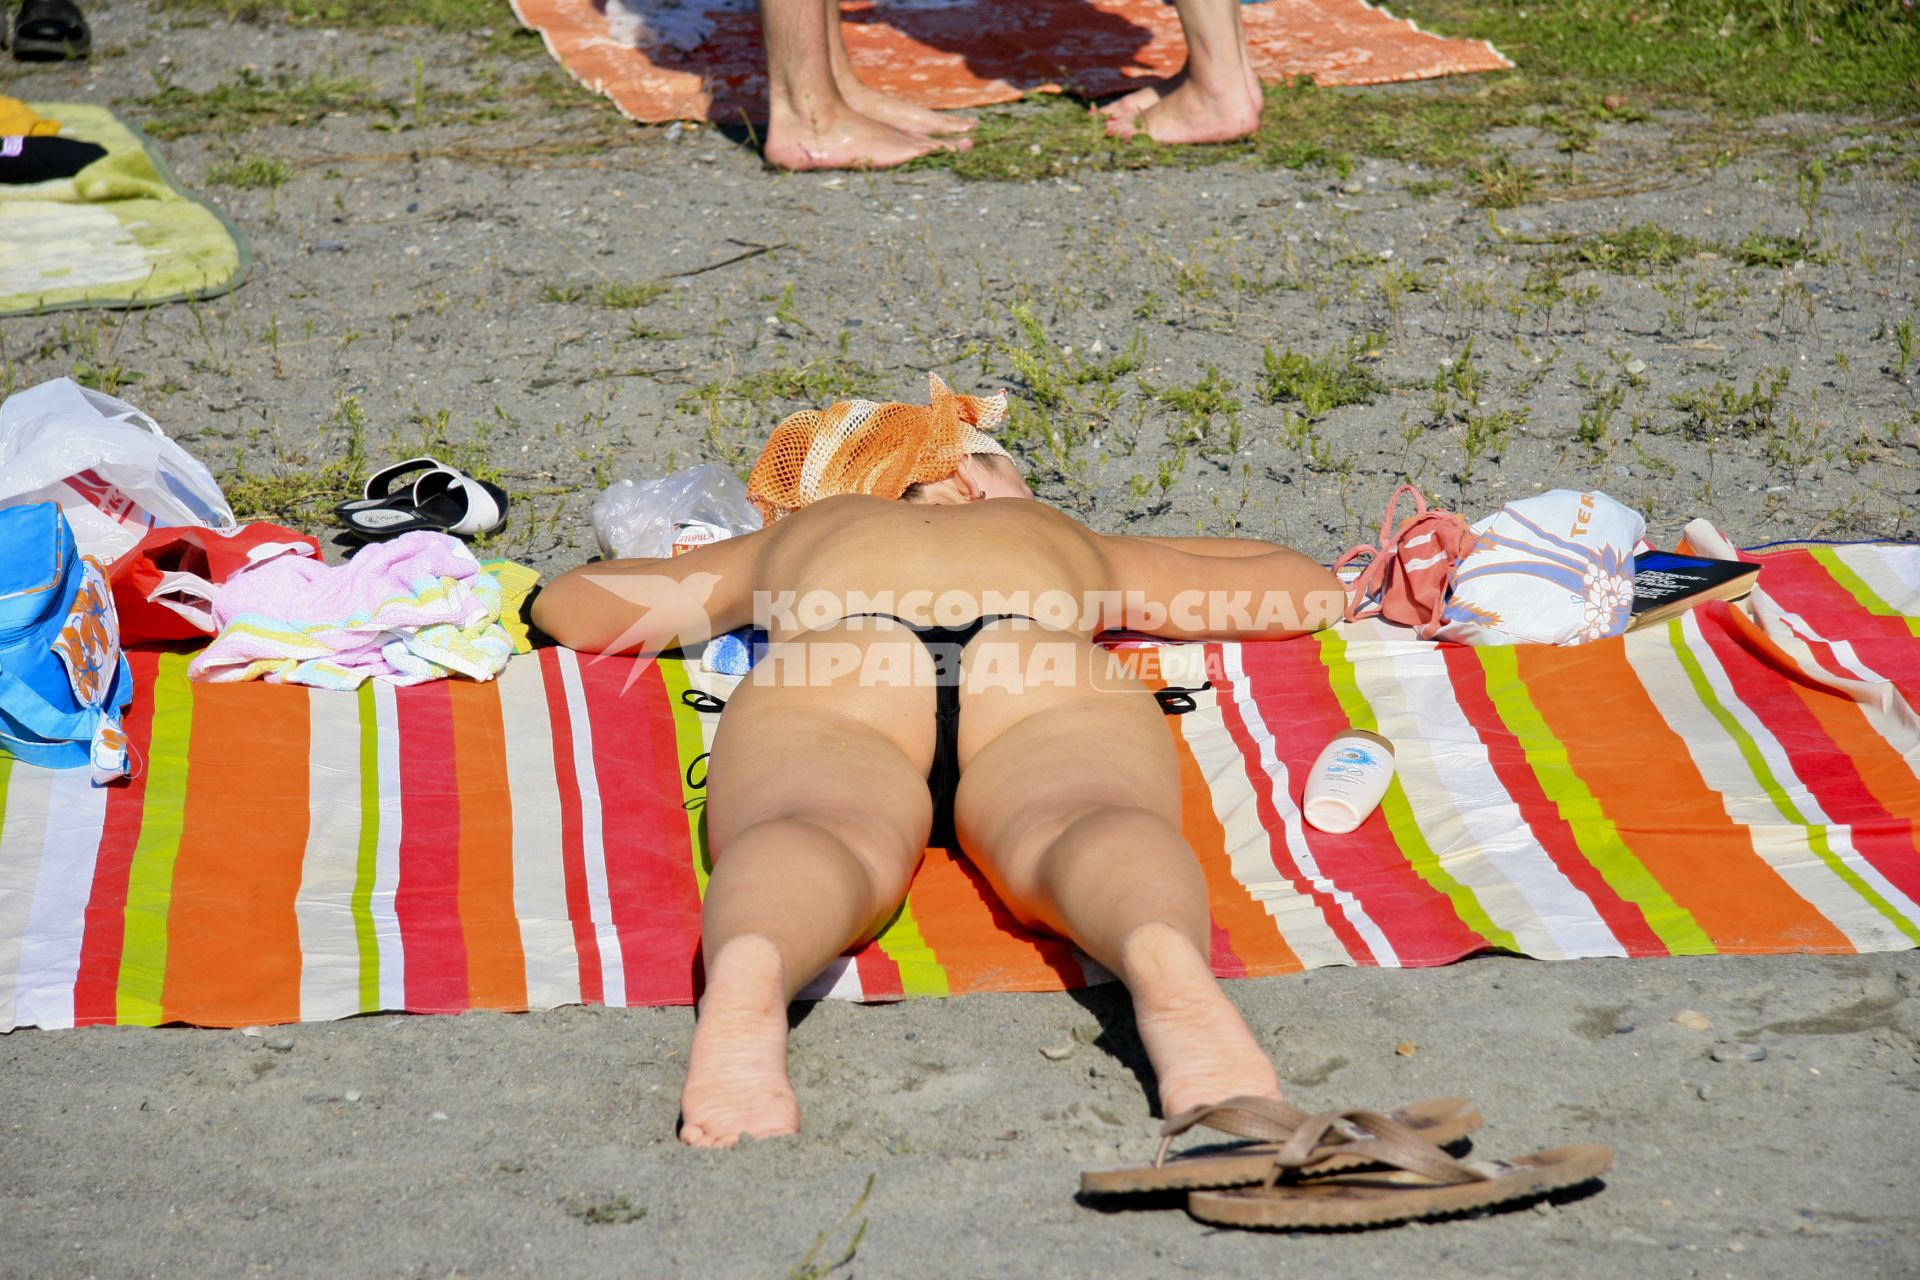 Девушка загорает на пляже без купальника.